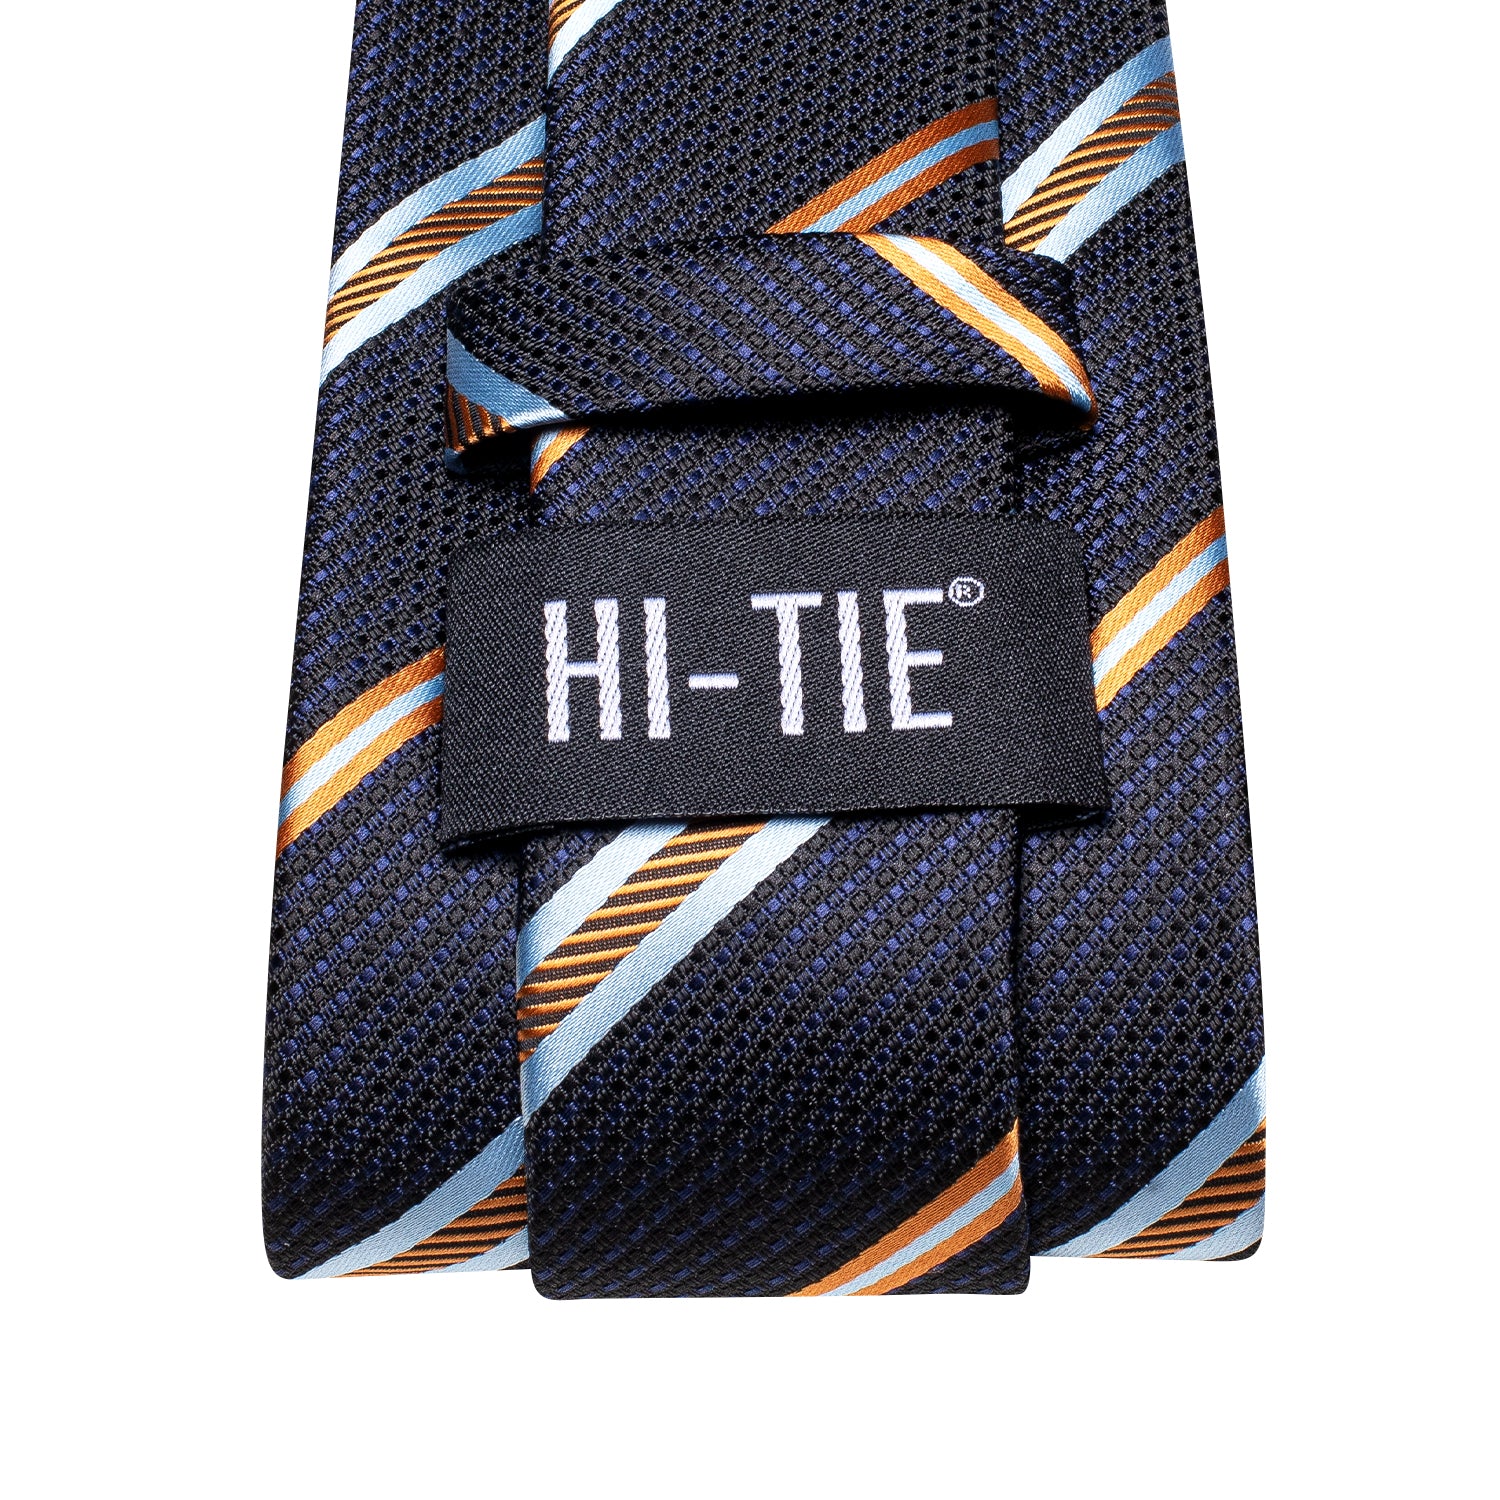 Blue Yellow White Strip Silk Tie Pocket Square Cufflinks Set